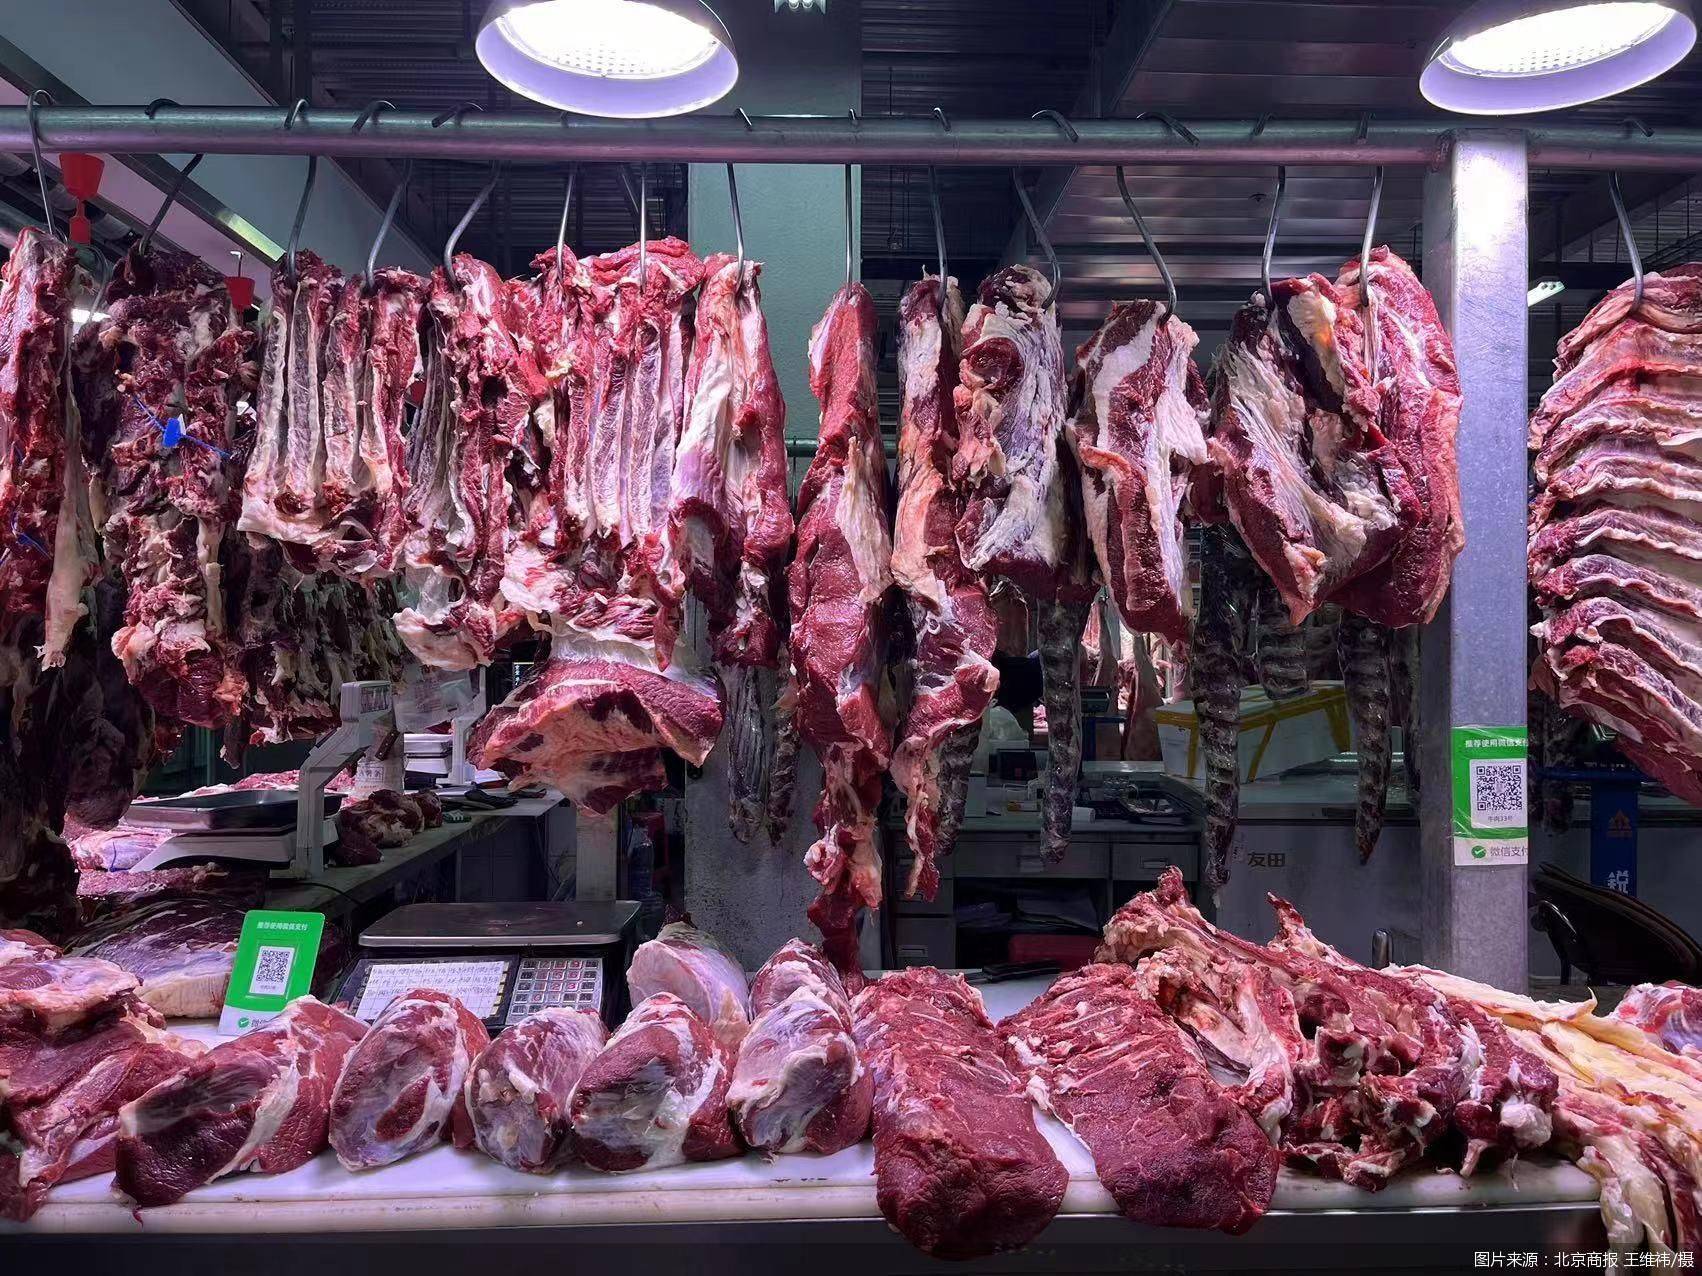 牛肉价格连降,春节保供期间价格优势明显